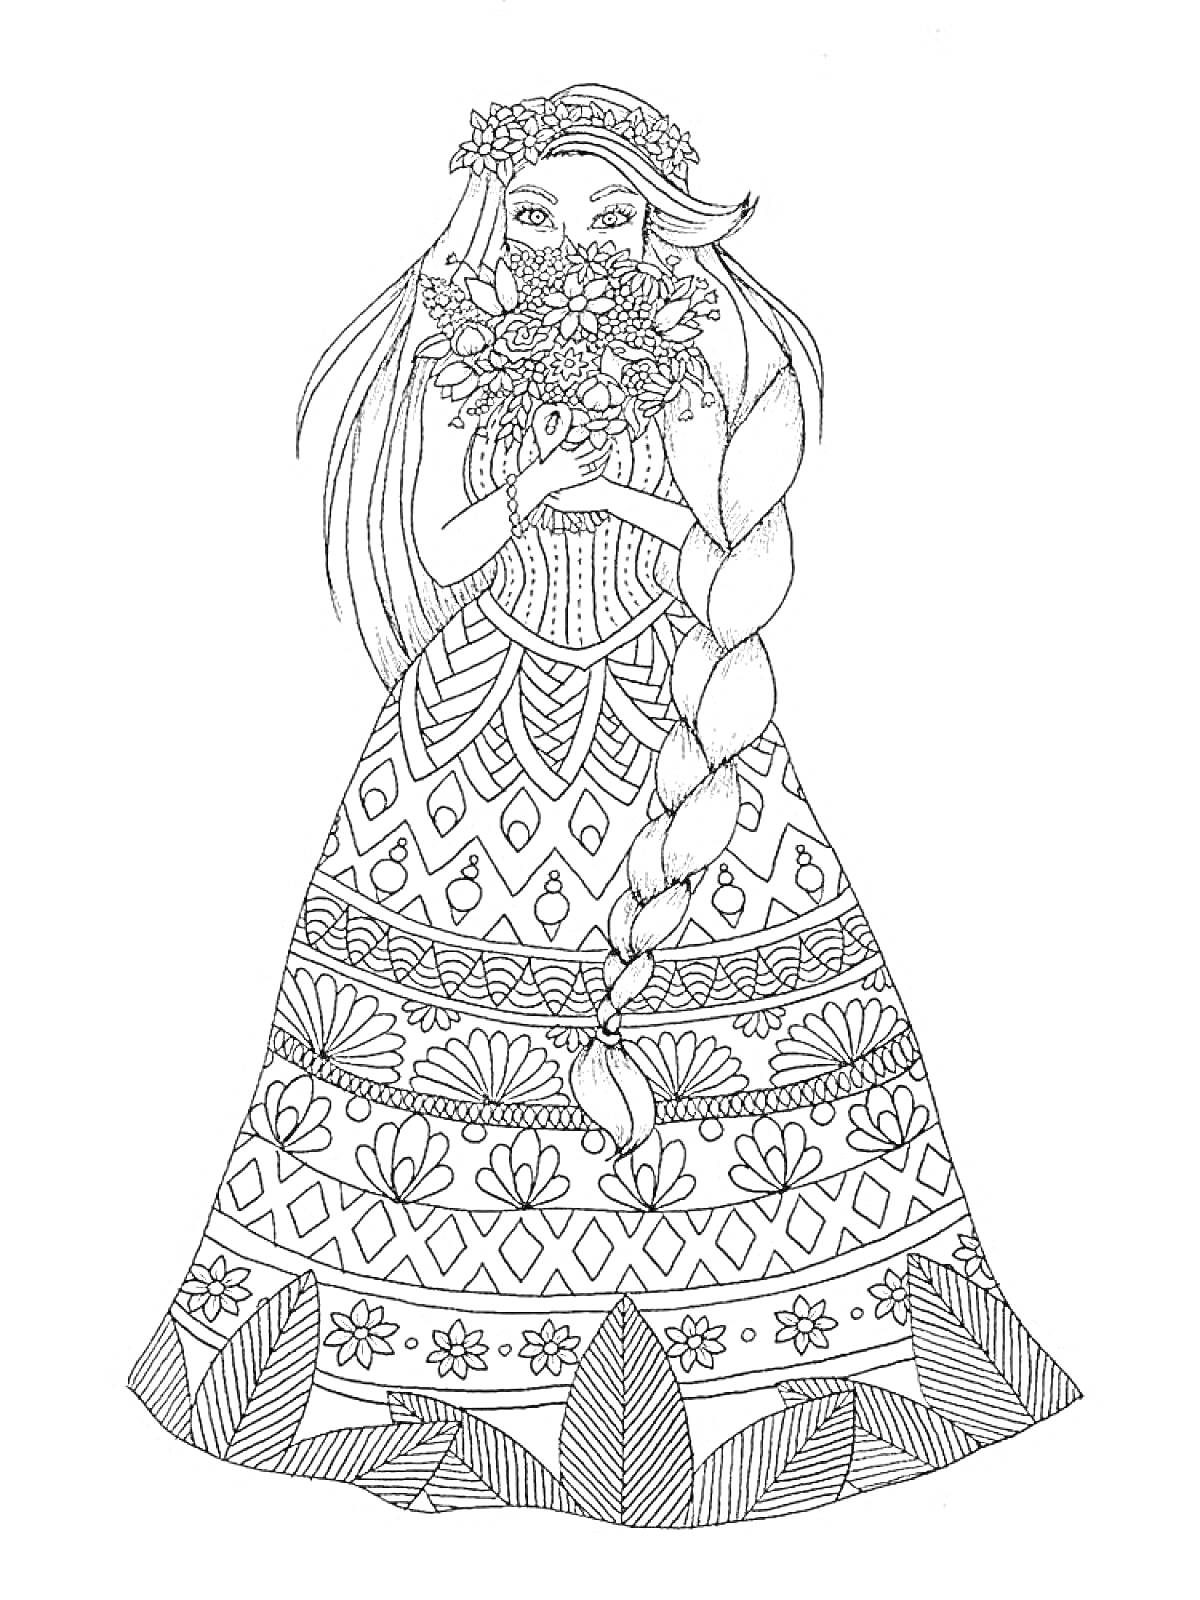 Девушка с длинной косой в платье с узорами, держащая букет цветов